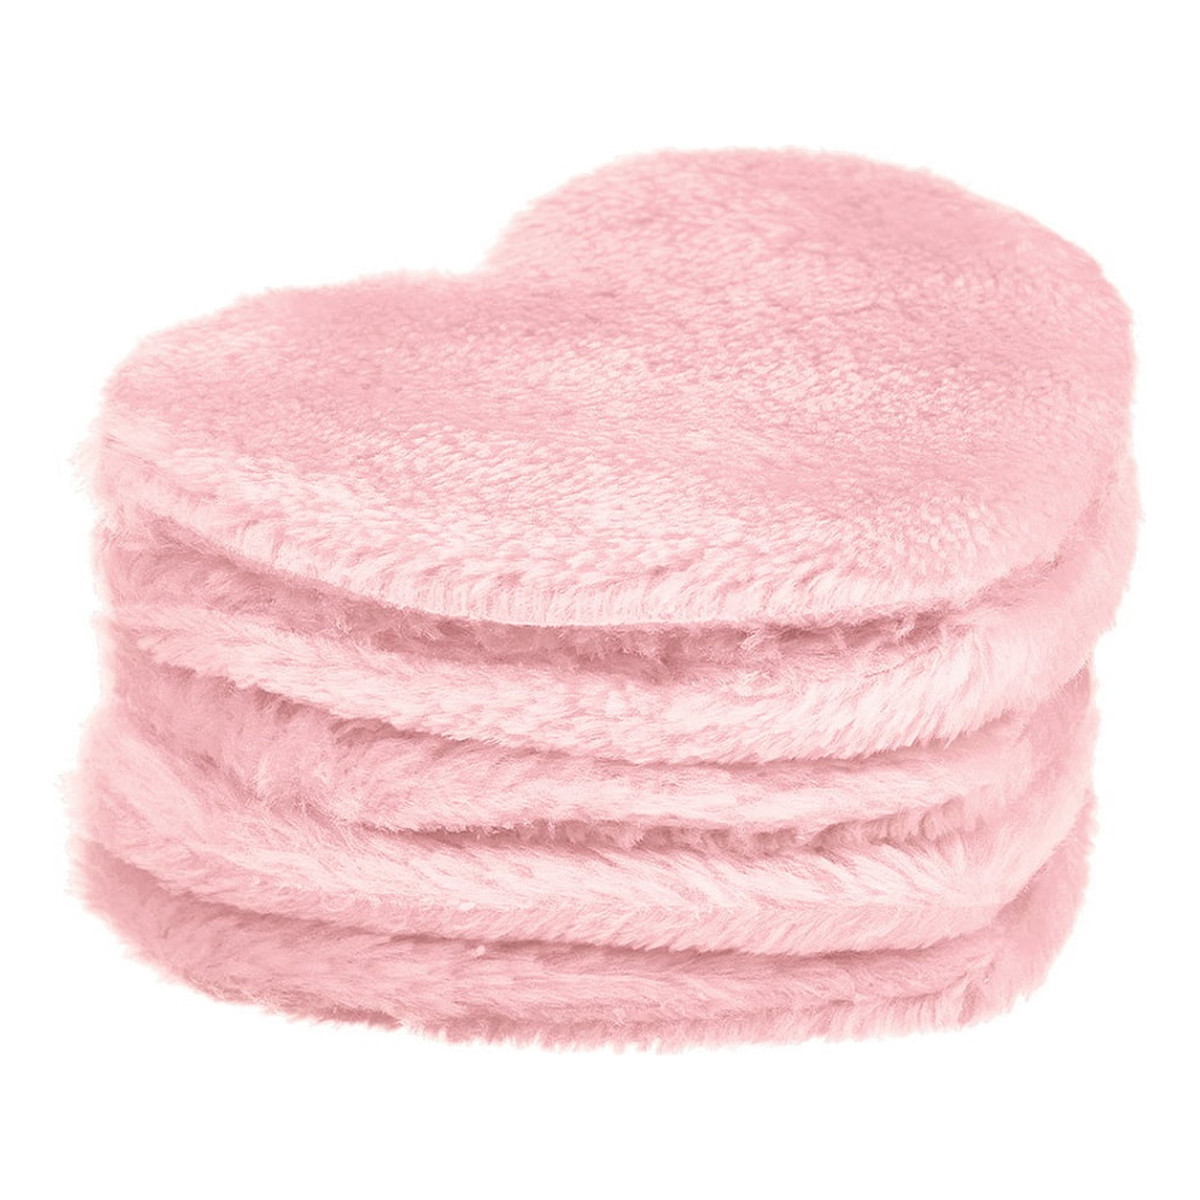 Glov Heart pads wielorazowe płatki kosmetyczne pink 5szt.